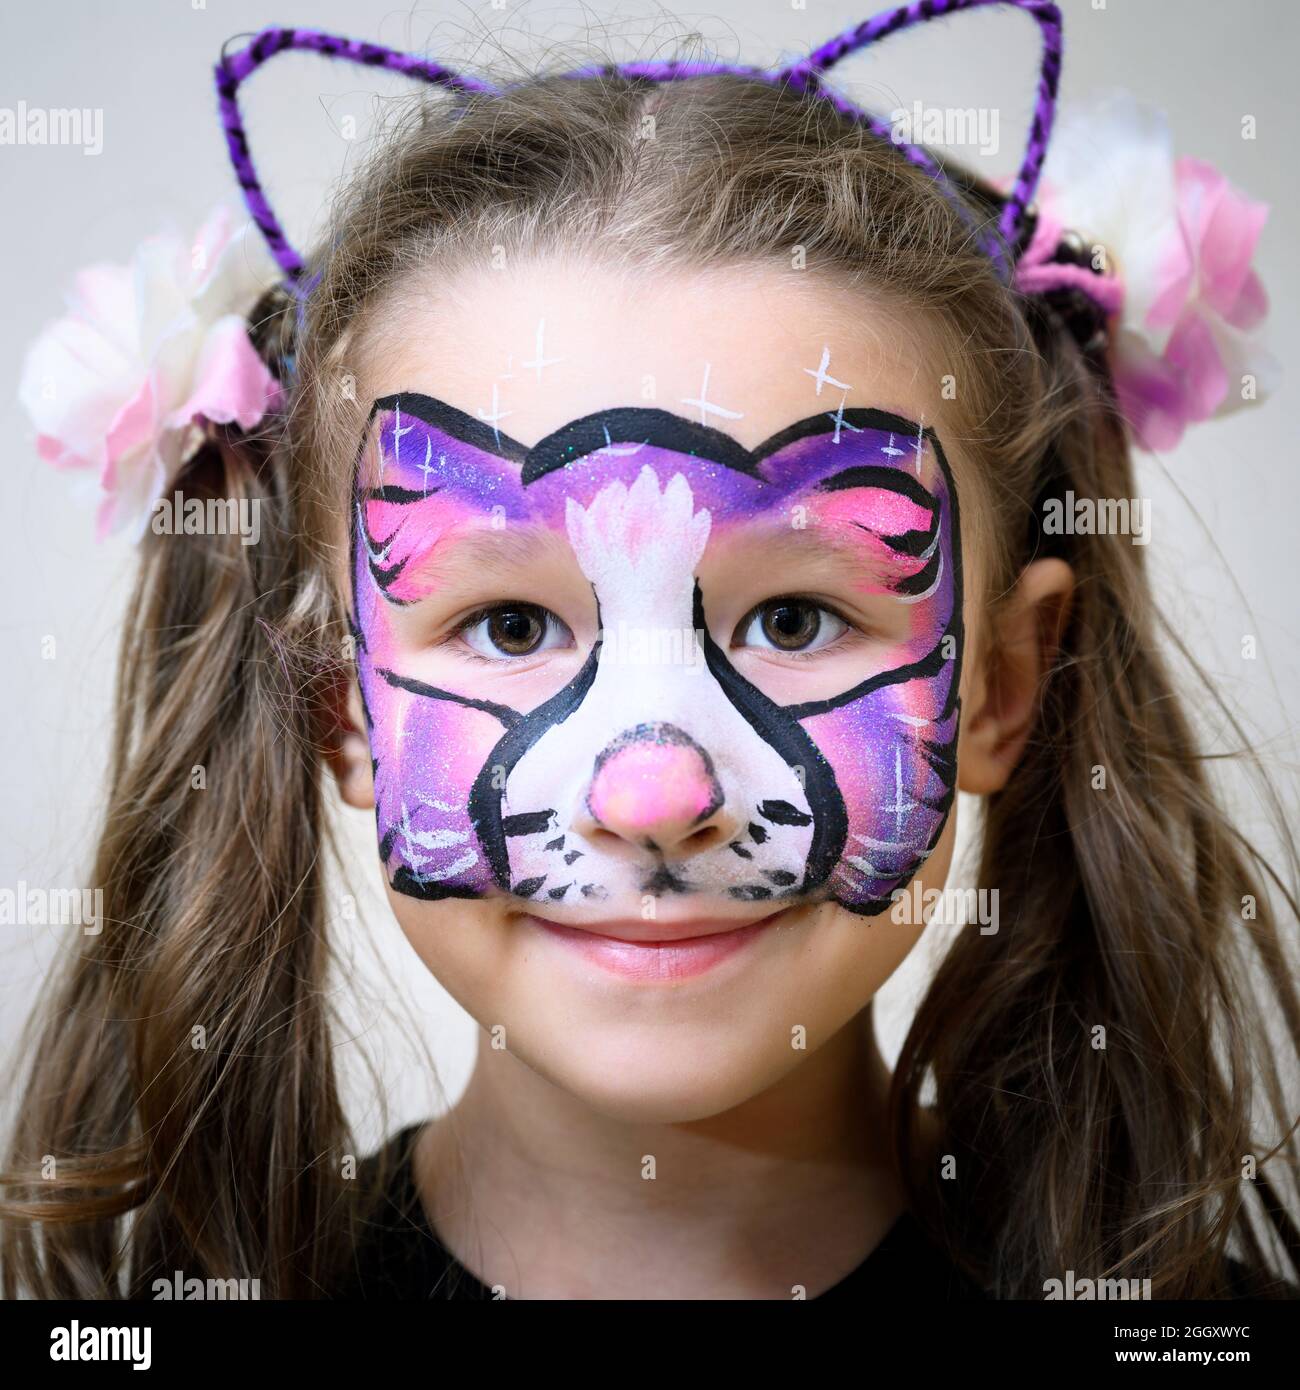 Maquillage Chat : Vidéo maquillage enfant facile